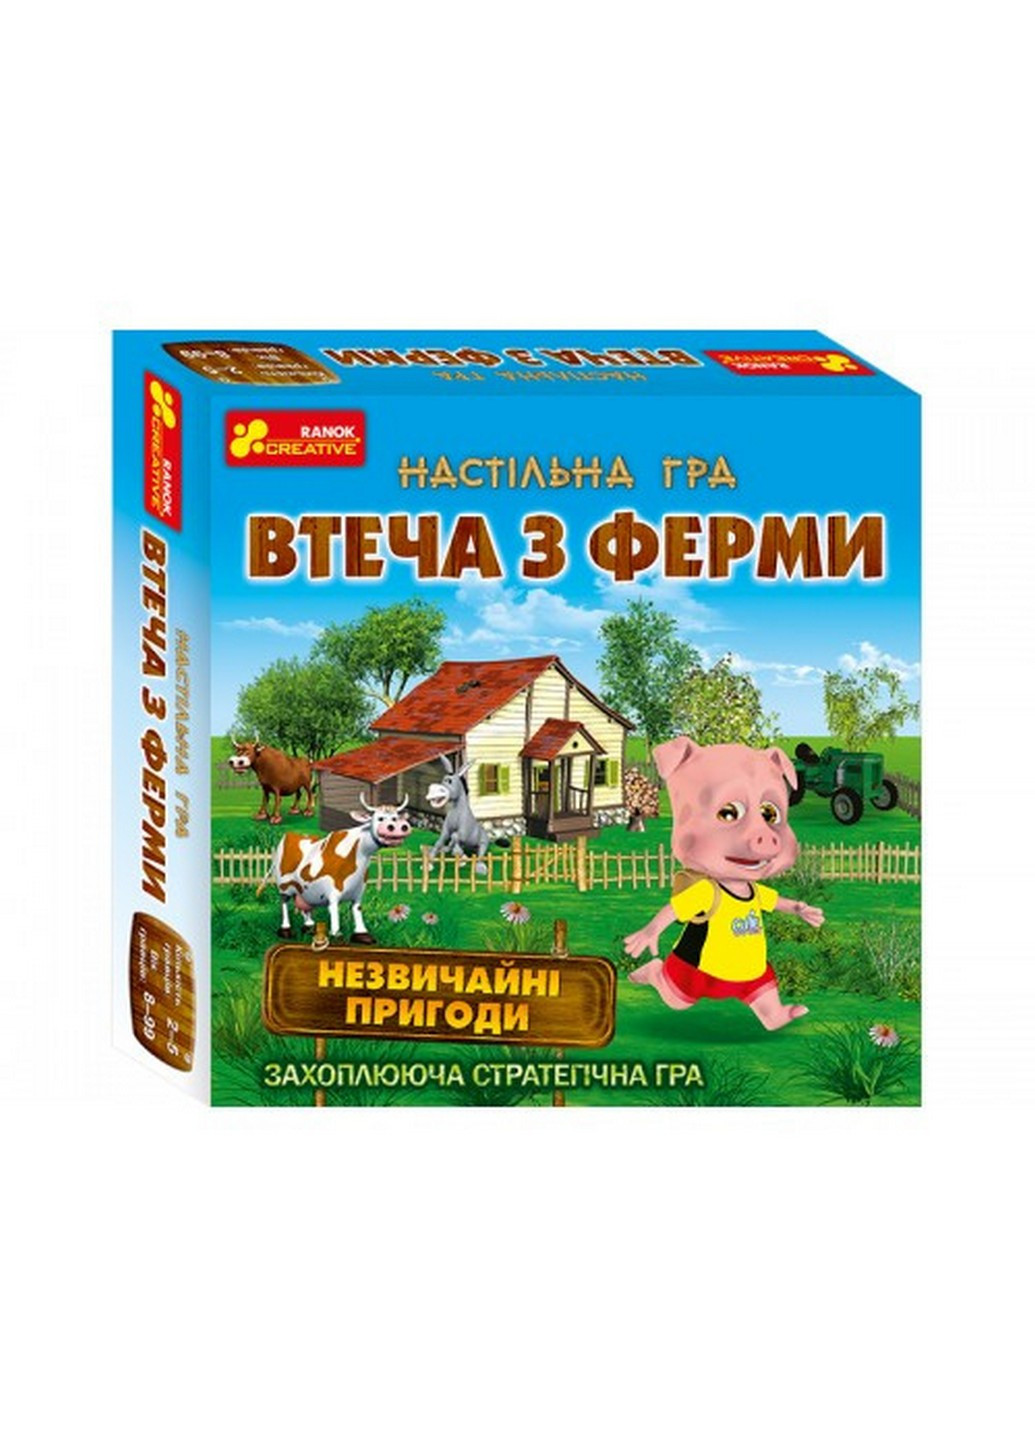 Детская настольная игра "Побег из фермы" на укр. языке 23,5х23,5х5,2 см Ranok Creative (259263556)